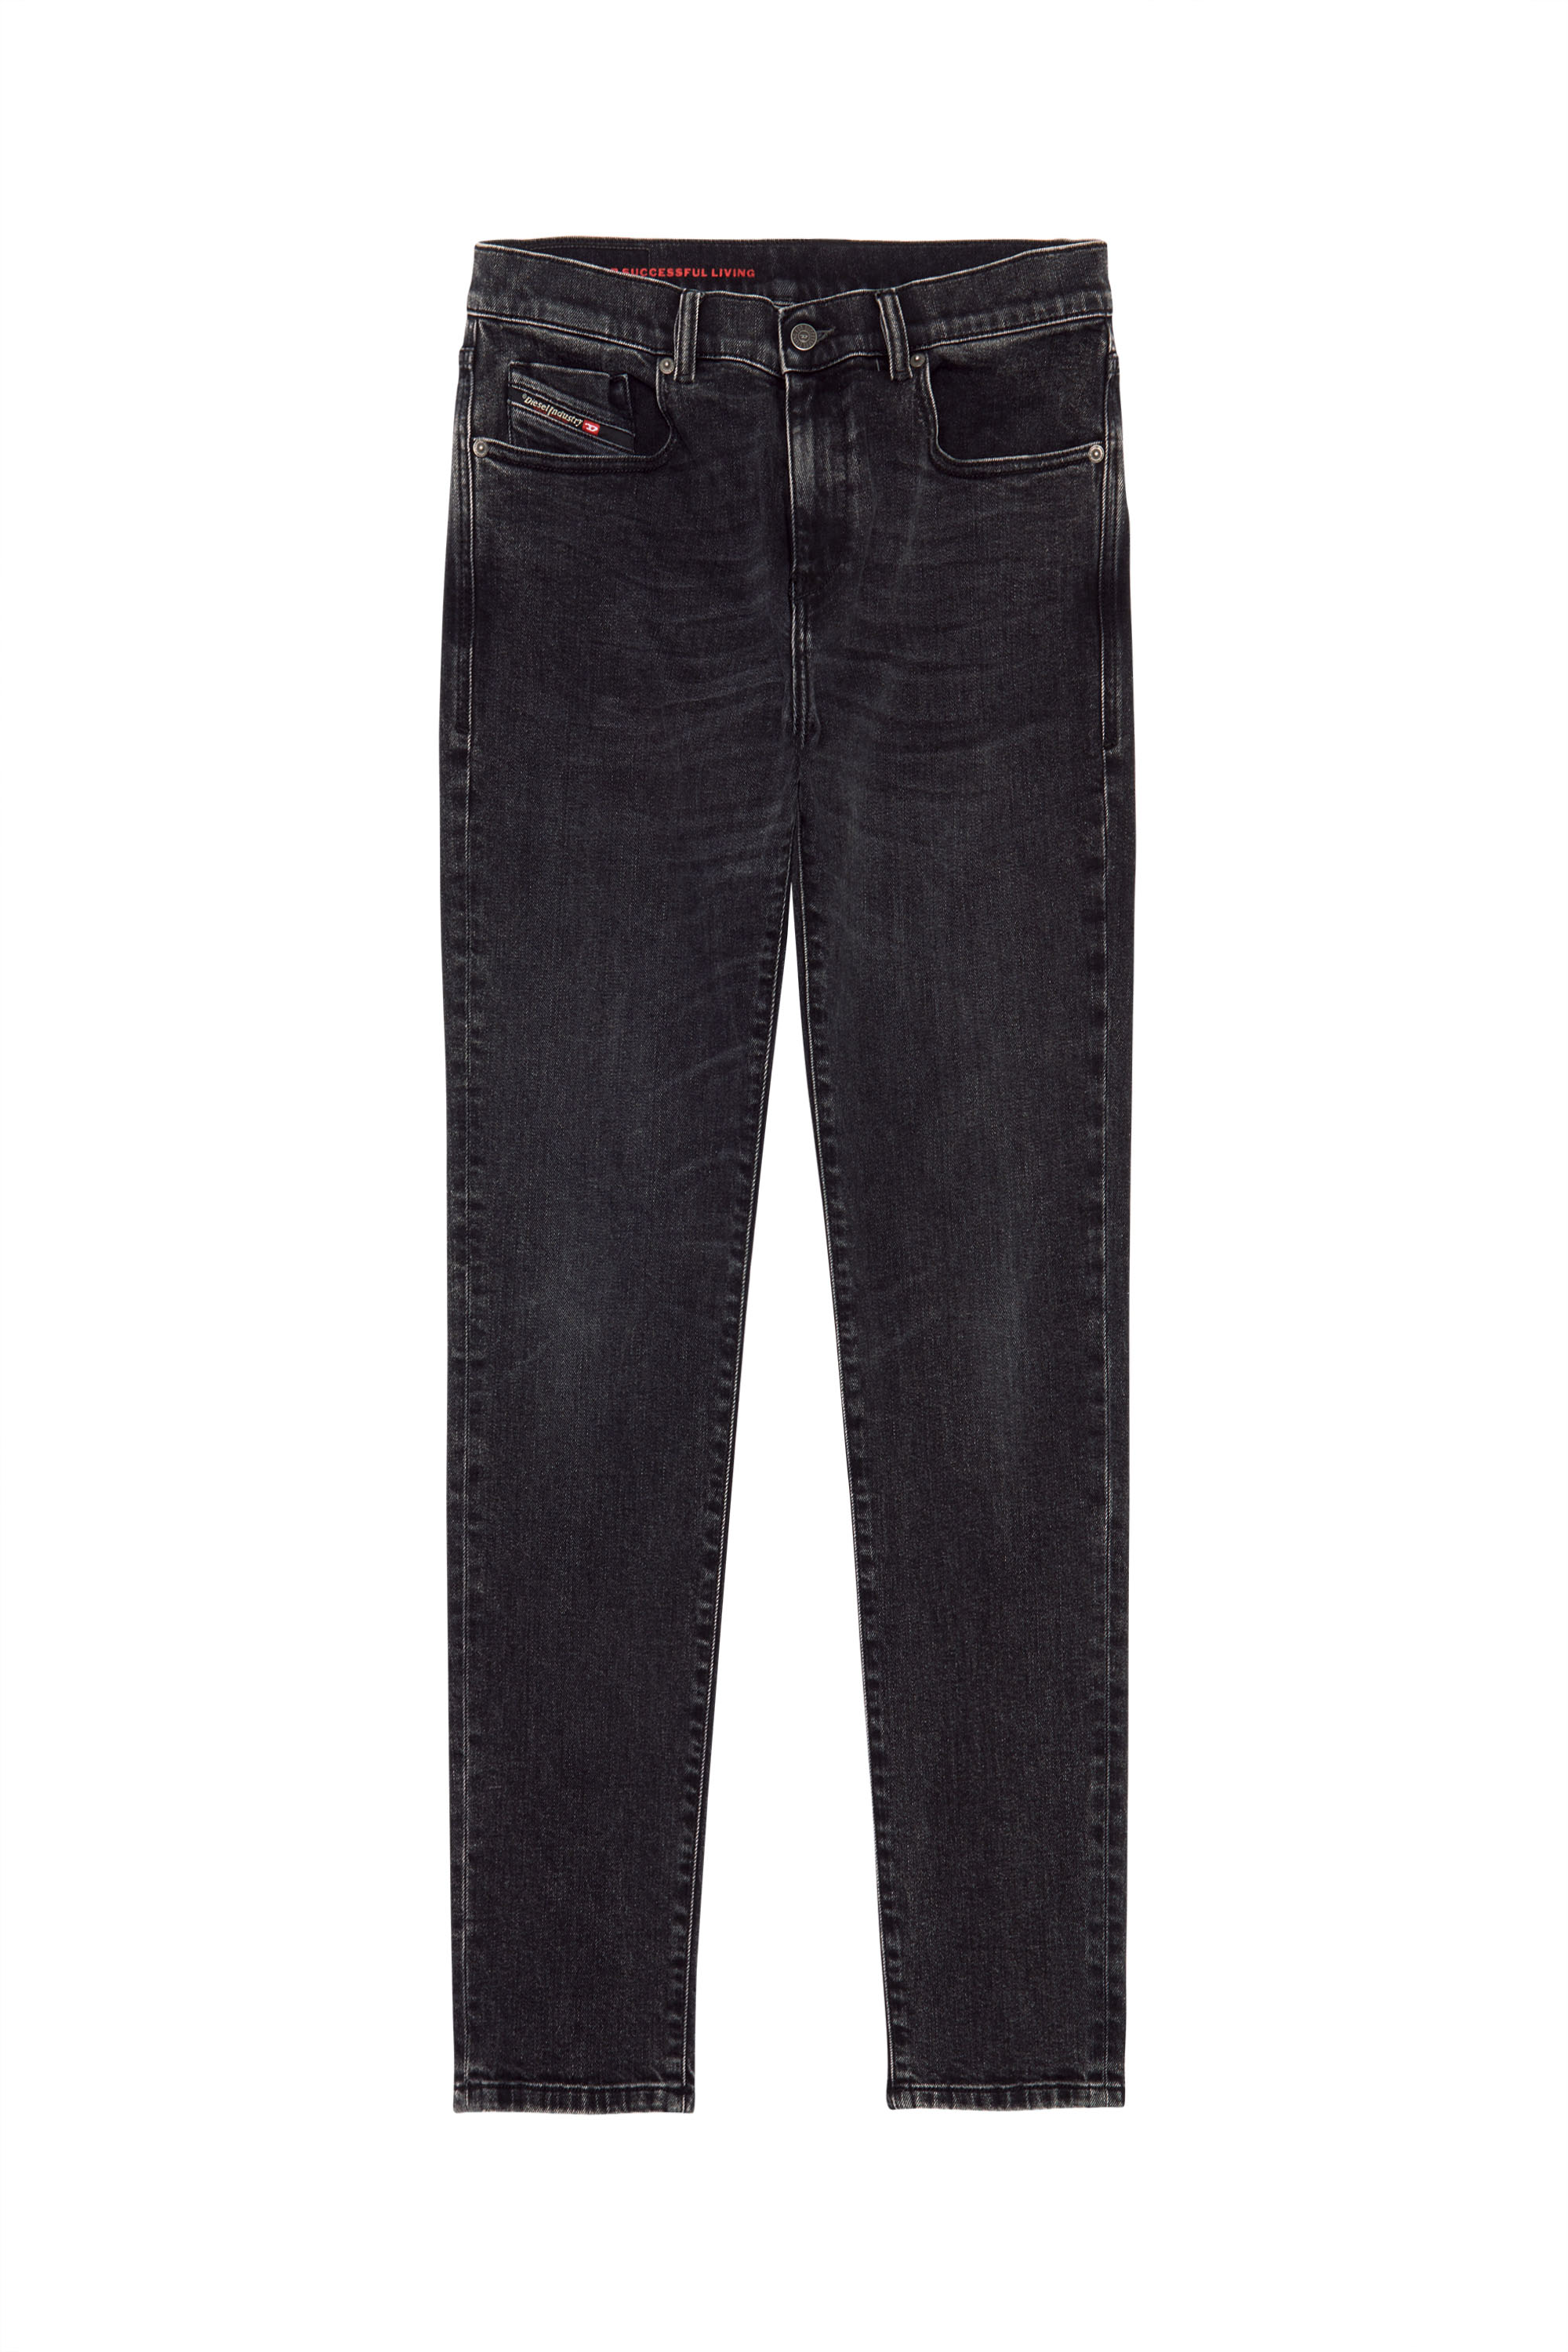 2019 D-STRUKT 09B83 Slim Jeans, Black/Dark grey - Jeans